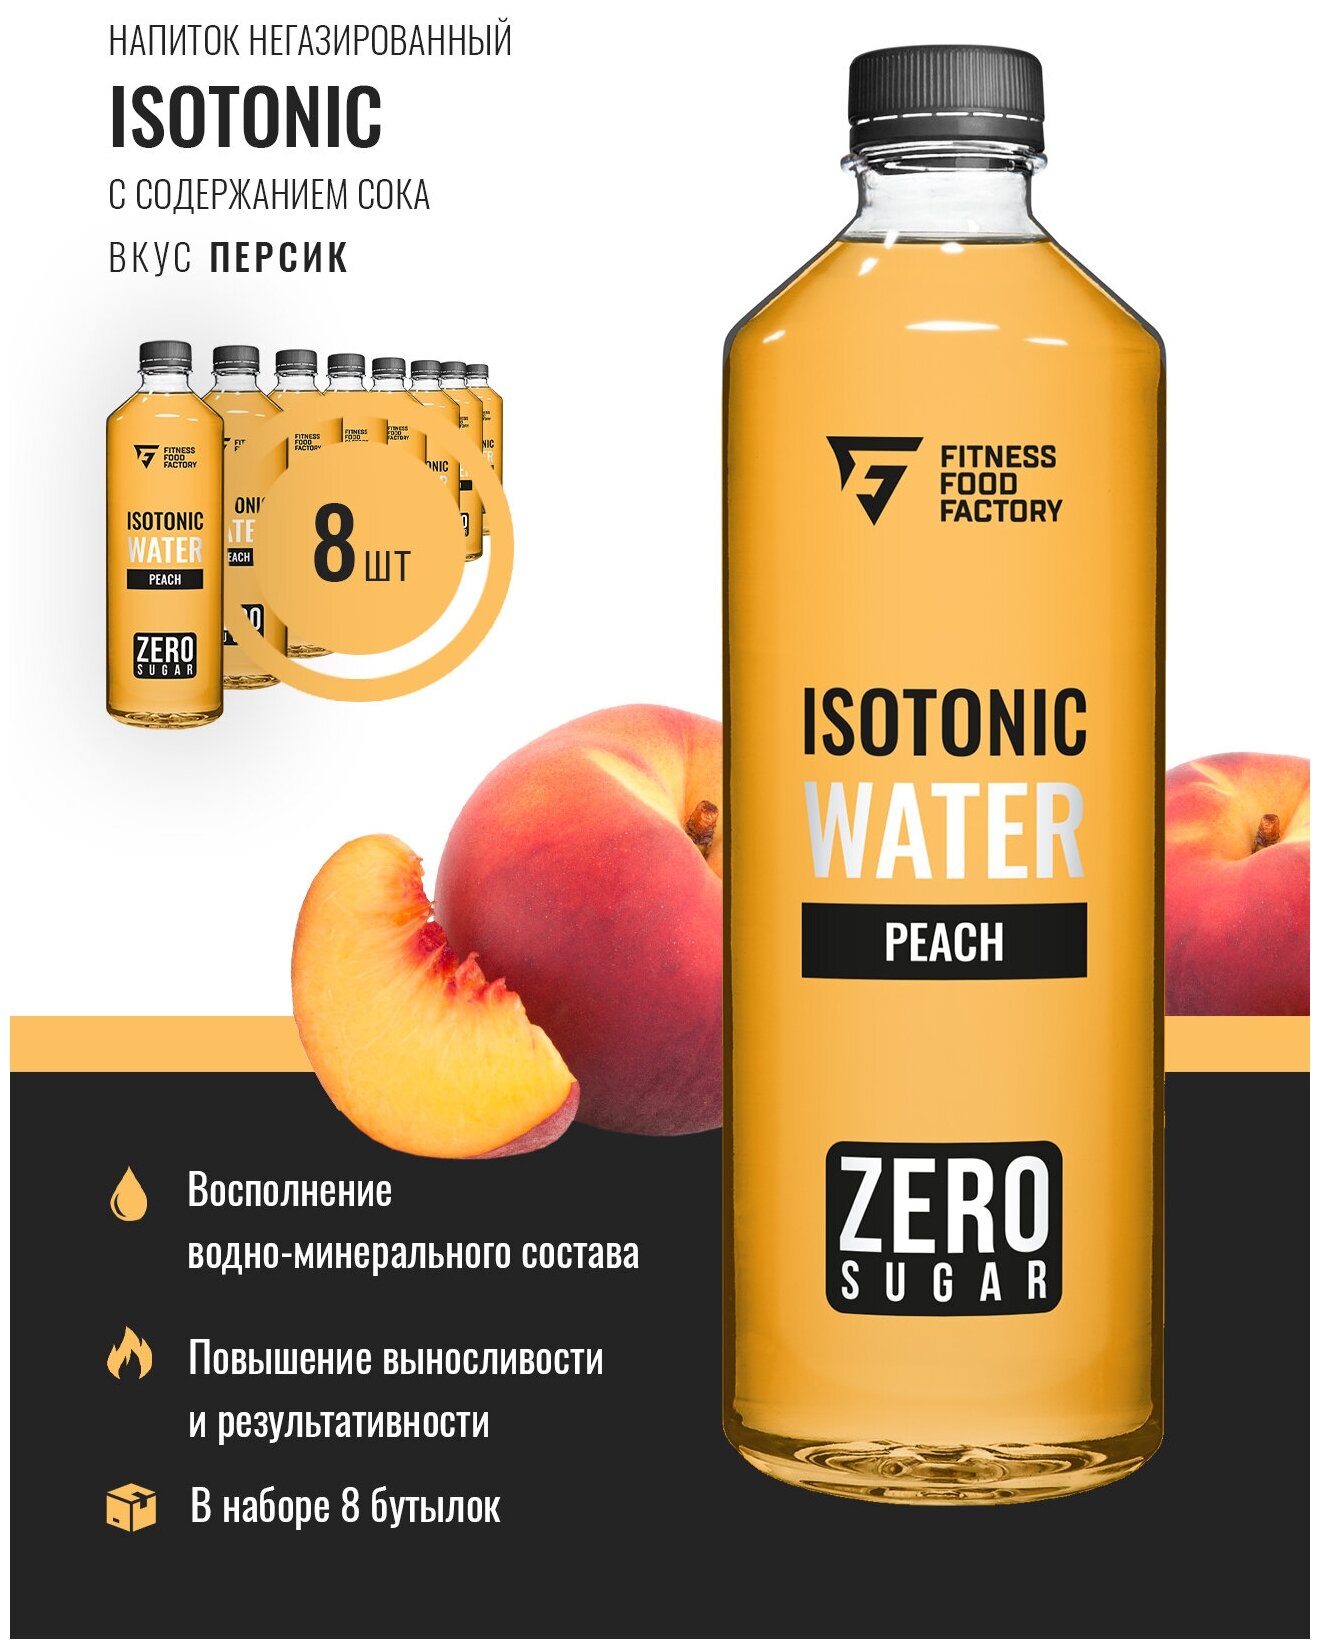 Напиток негазированный с содержанием сока Fitness Food Factory Isotonic water, 8 шт по 500 мл